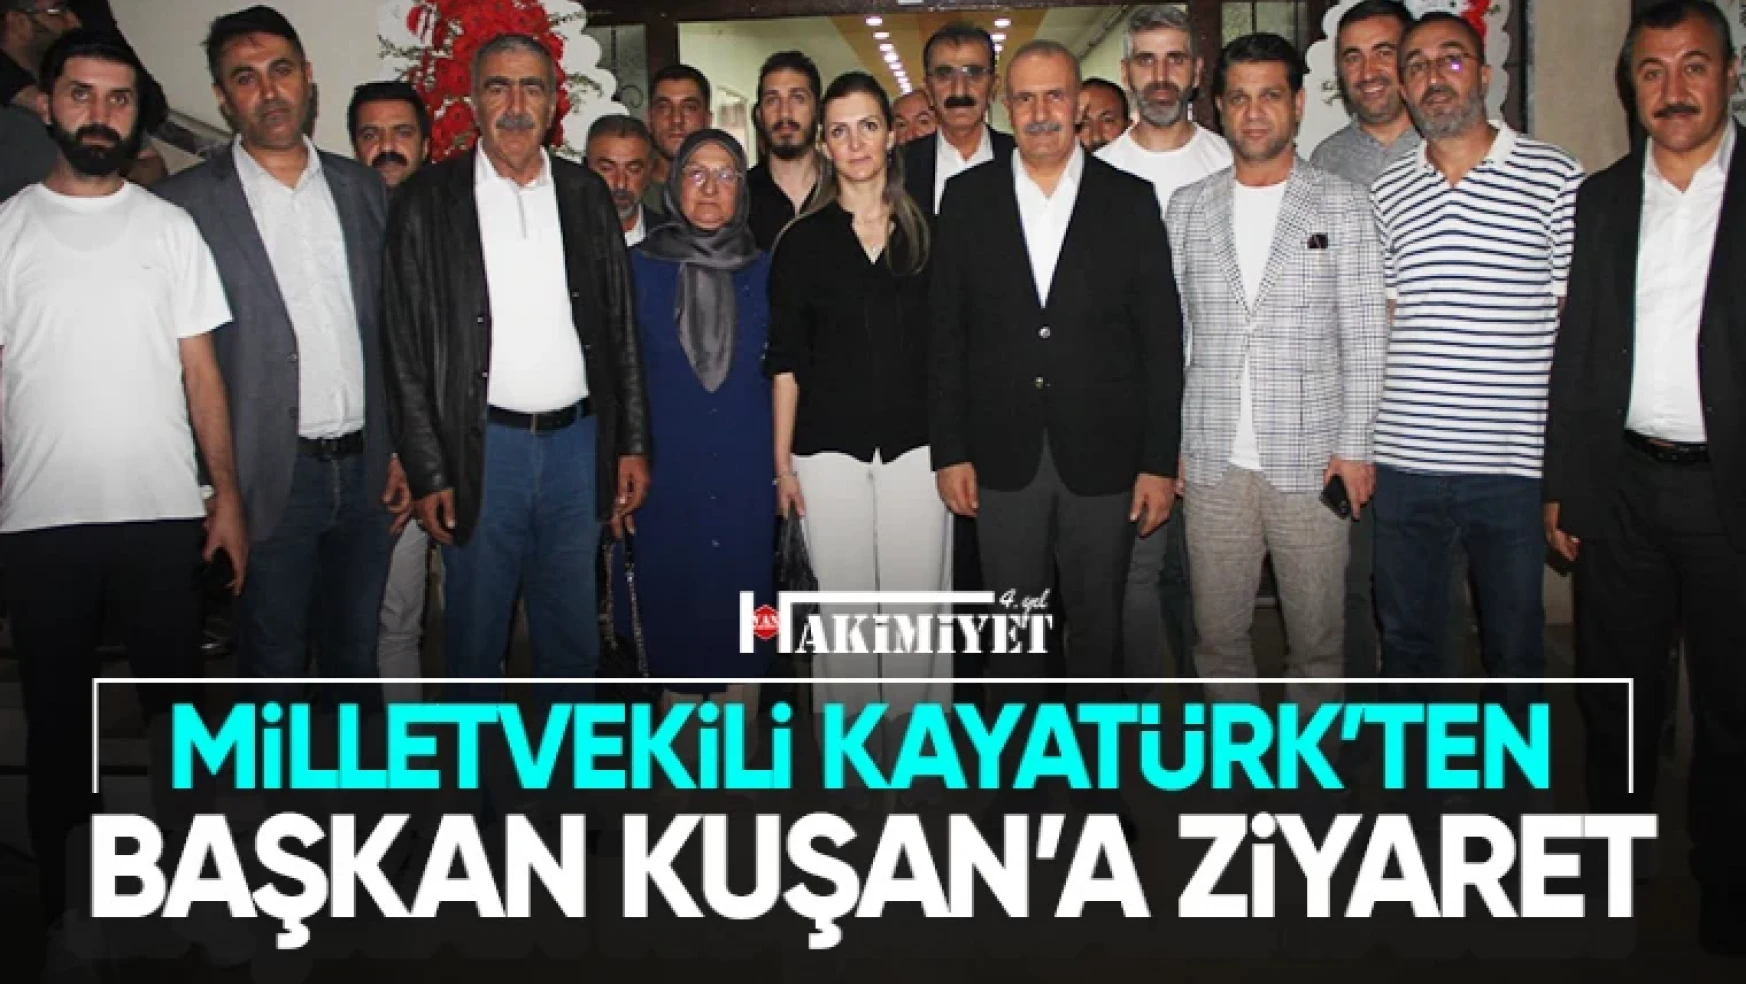 Milletvekili Kayatürk'ten, Başkan Kuşan'a hayırlı olsun ziyareti